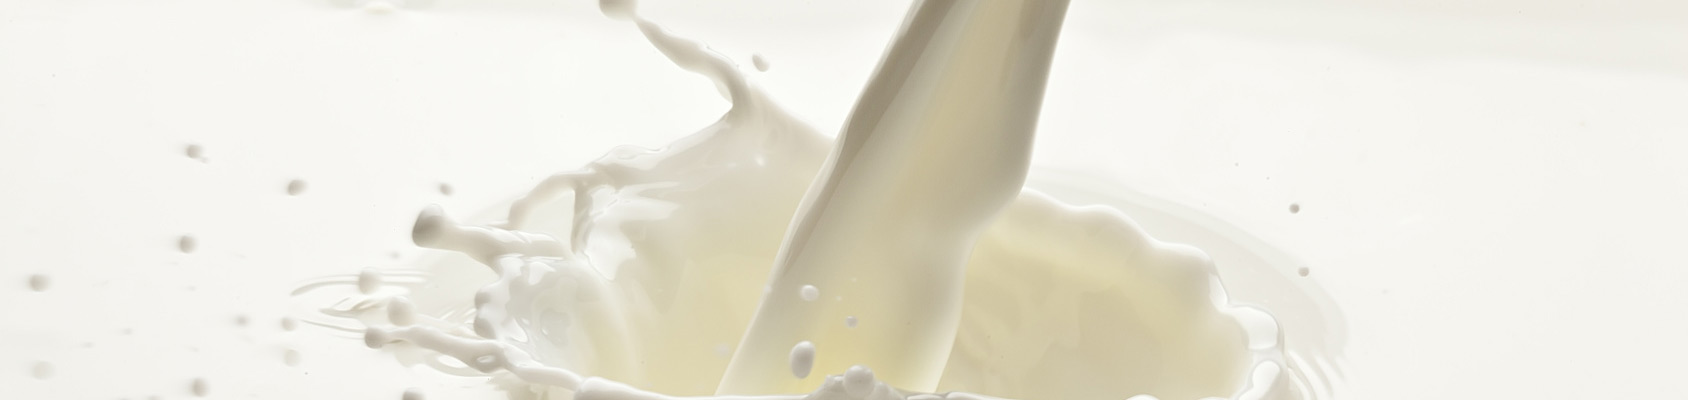 Flüssige Milchprodukte